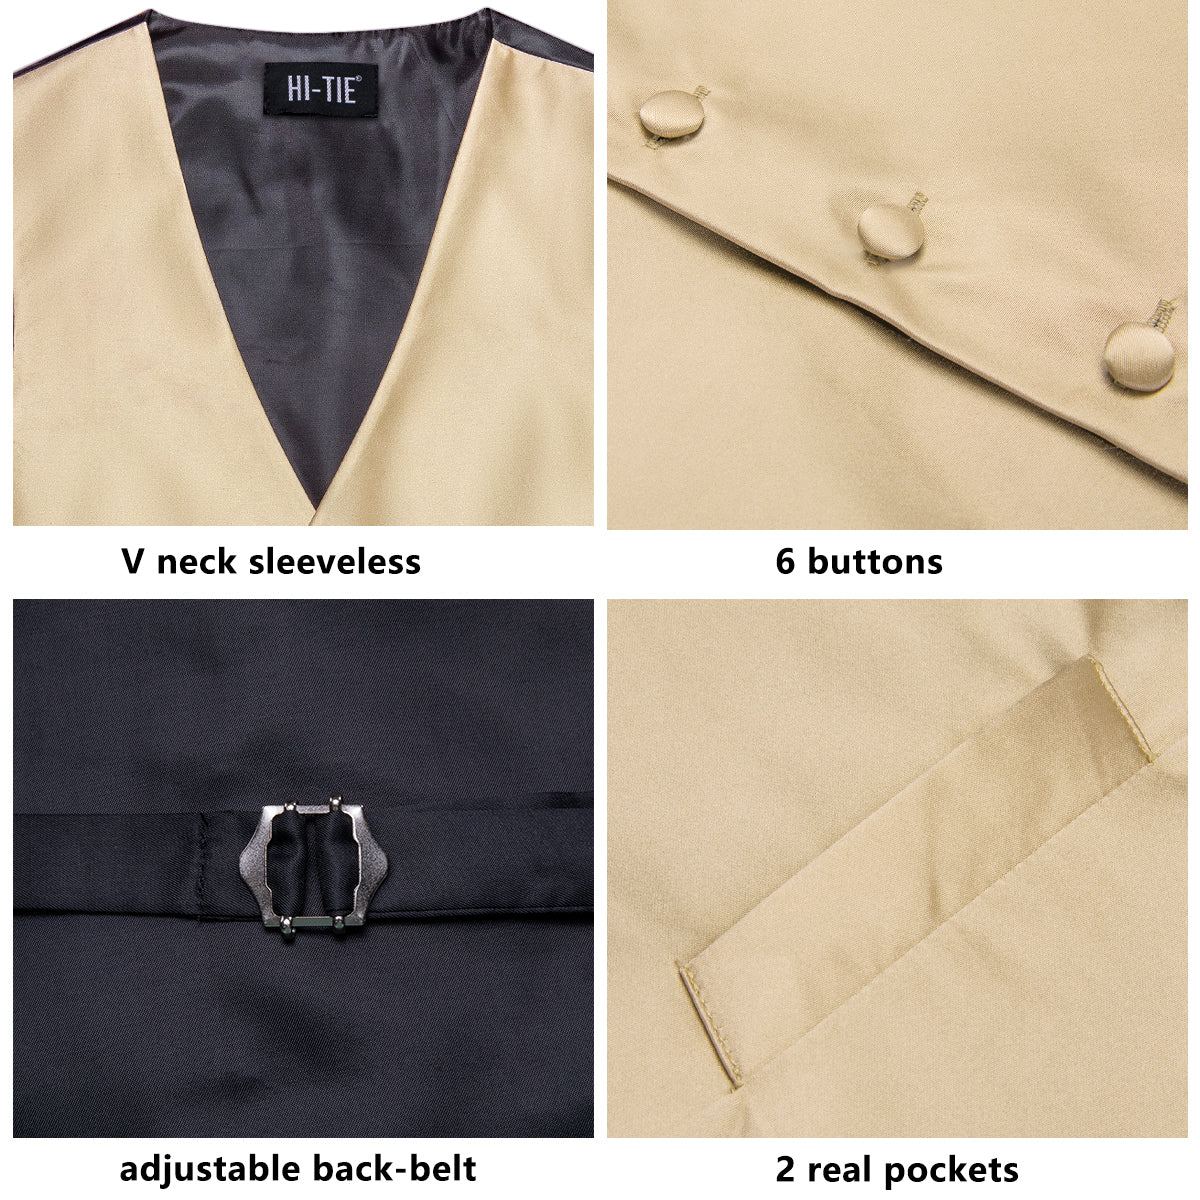 Dark Champagne Solid Color Men's Vest Tie Handkerchief Cufflinks Set